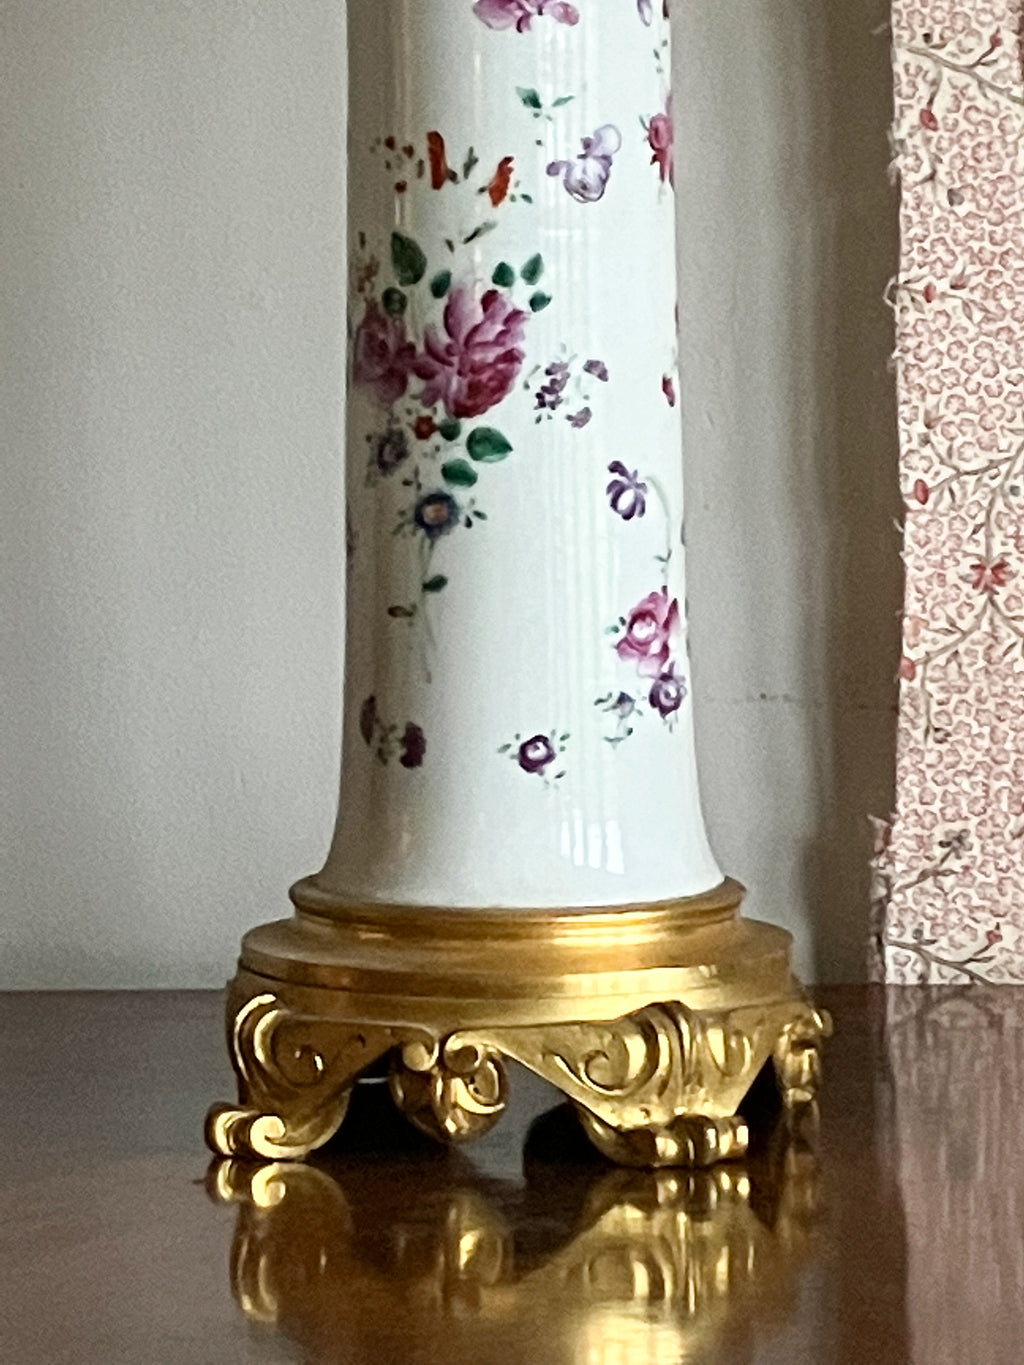 A 19th Century Porcelain Vase Lamp